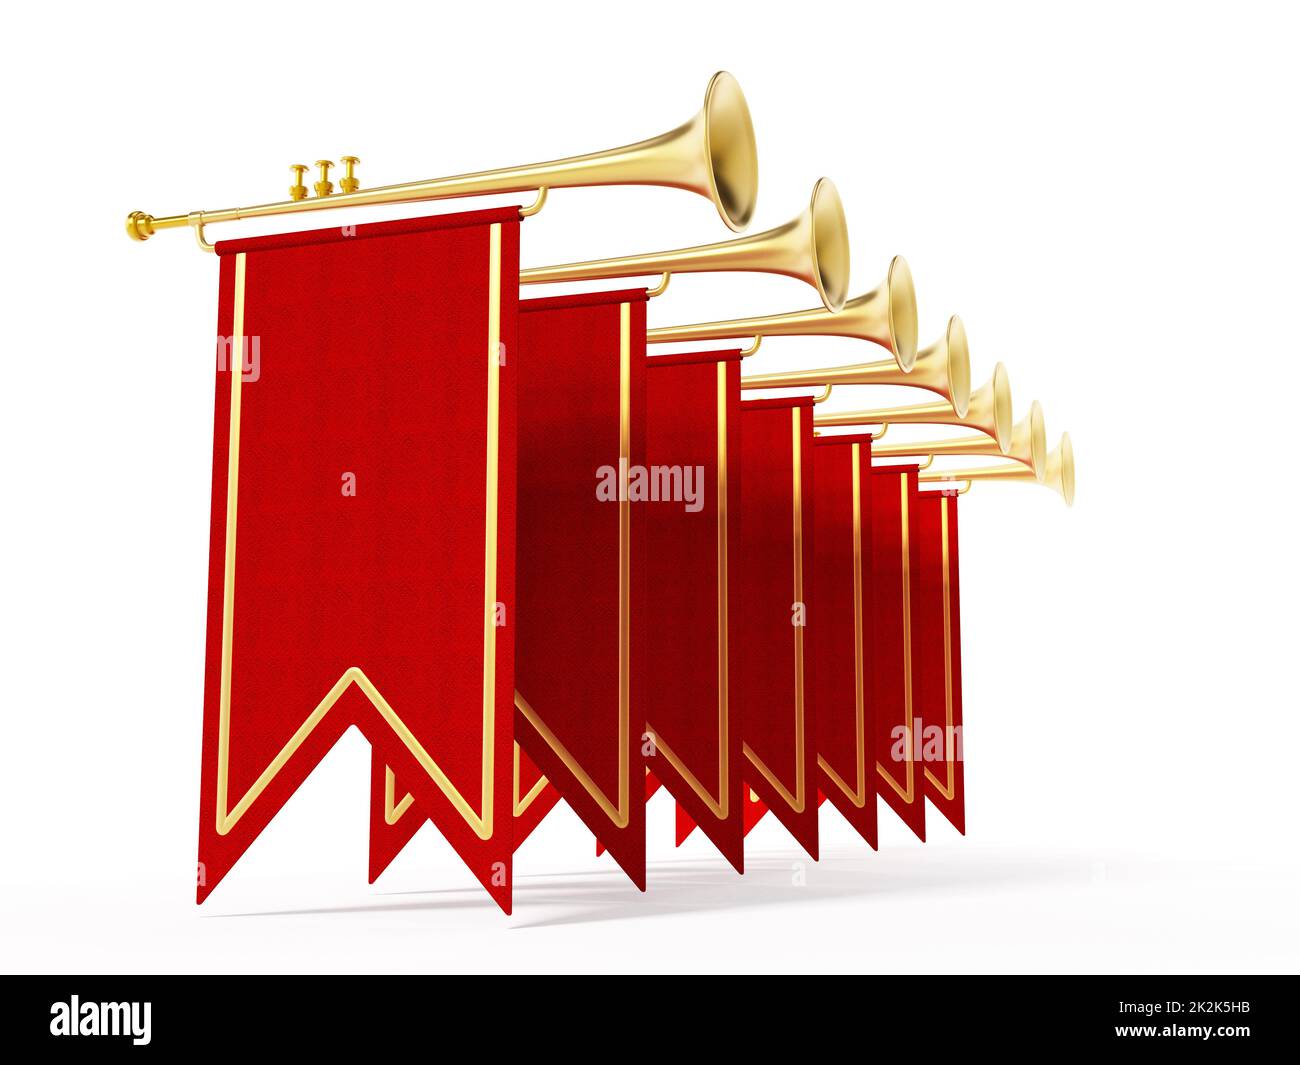 3,494 Trumpets Fanfare Images, Stock Photos, 3D objects, & Vectors